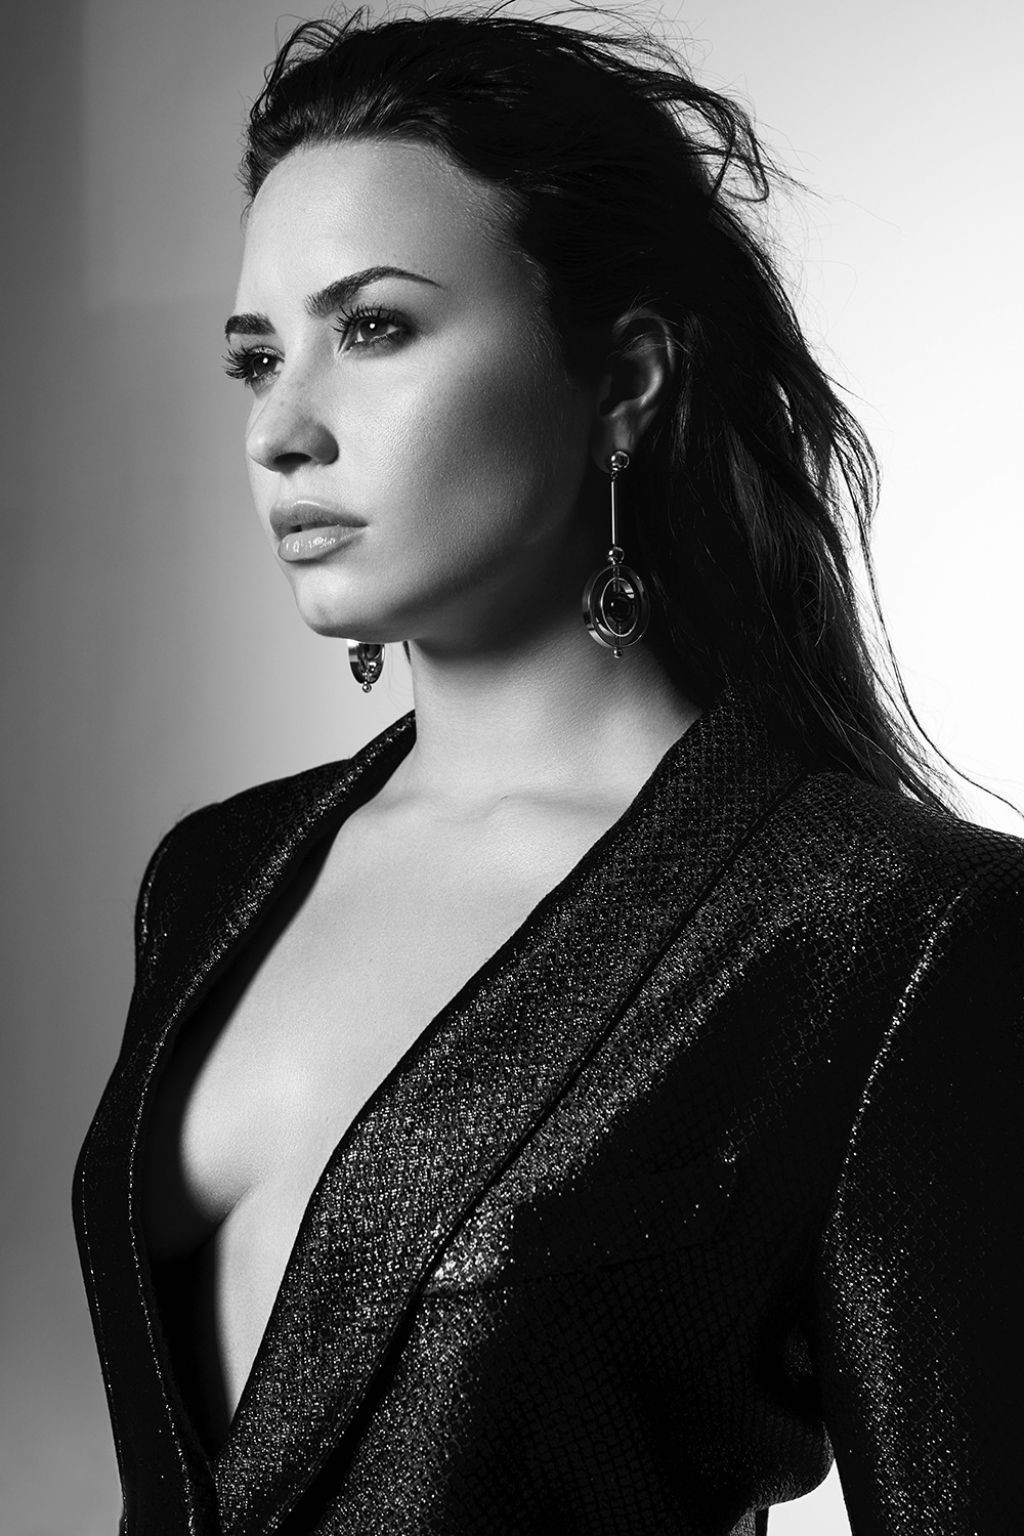 Um ano de um relato honesto e forte à maneira de Demi Lovato